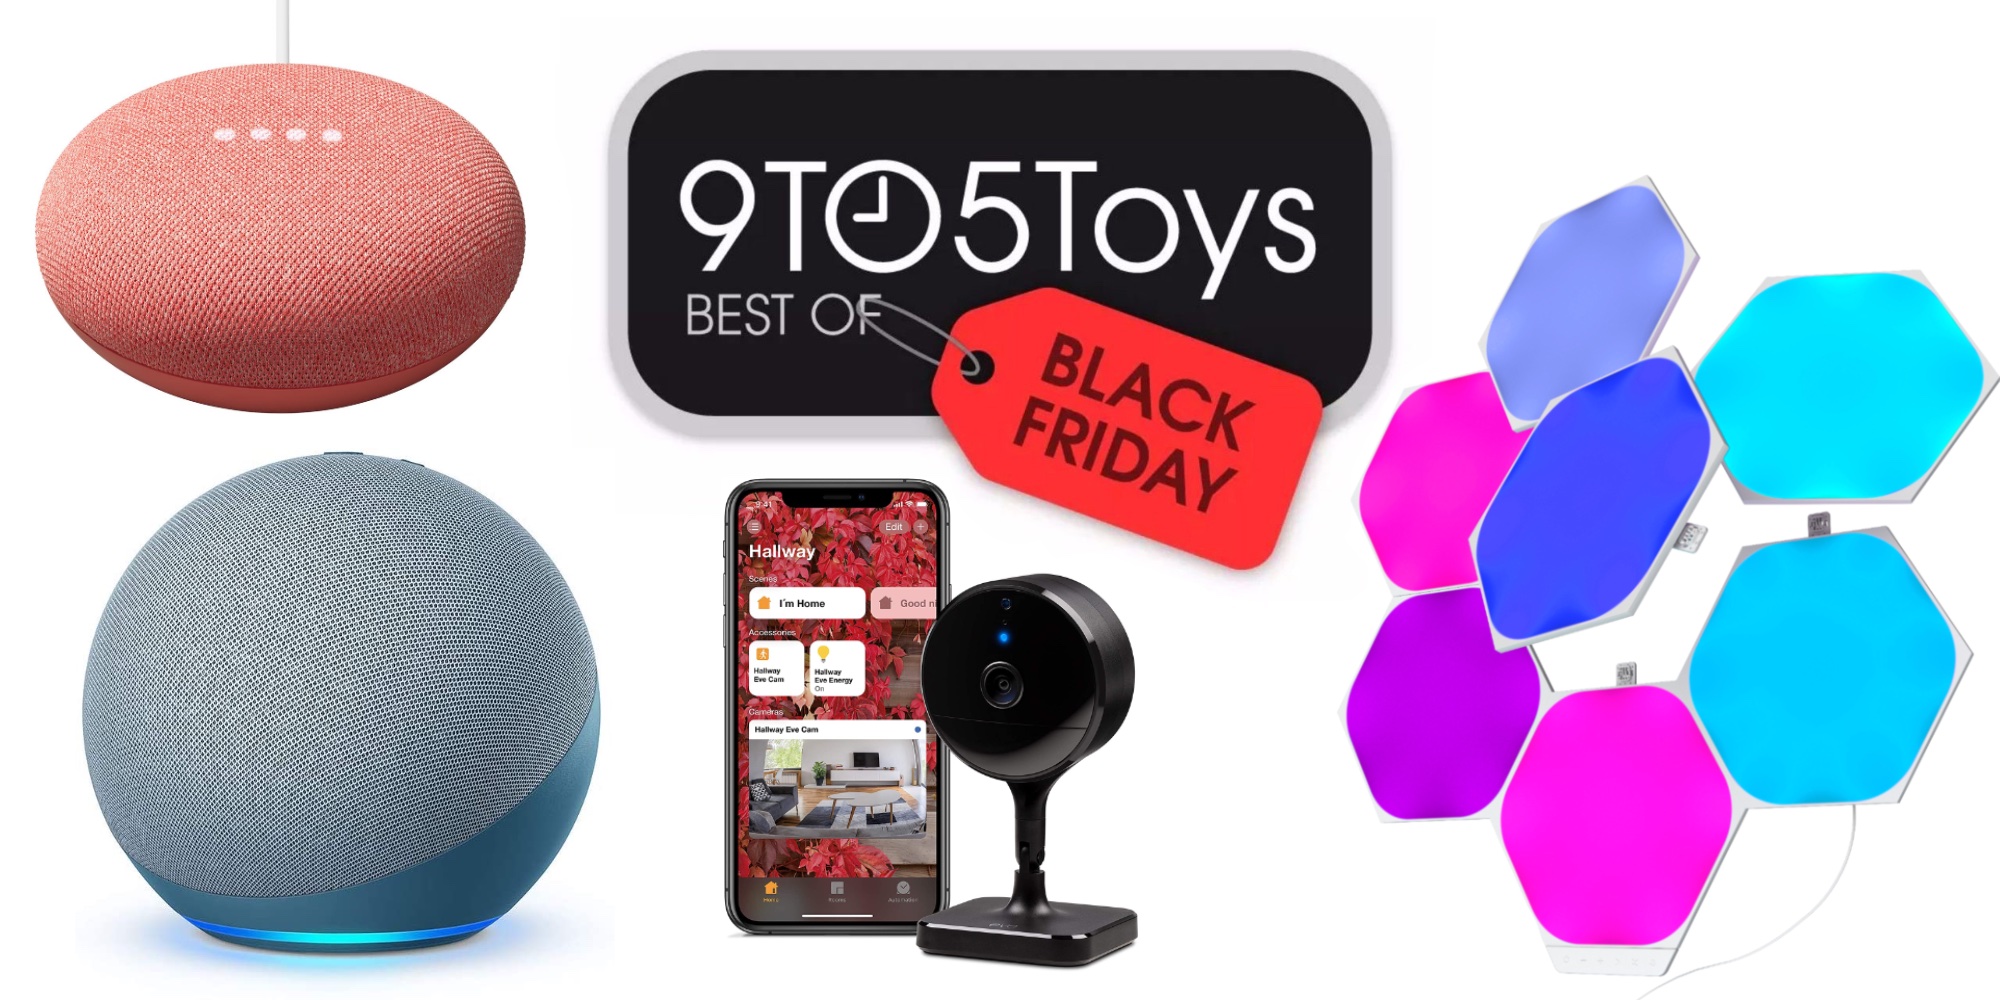 Black Friday smart home deals: Nanoleaf, Echo, Nest, more - 9to5Toys